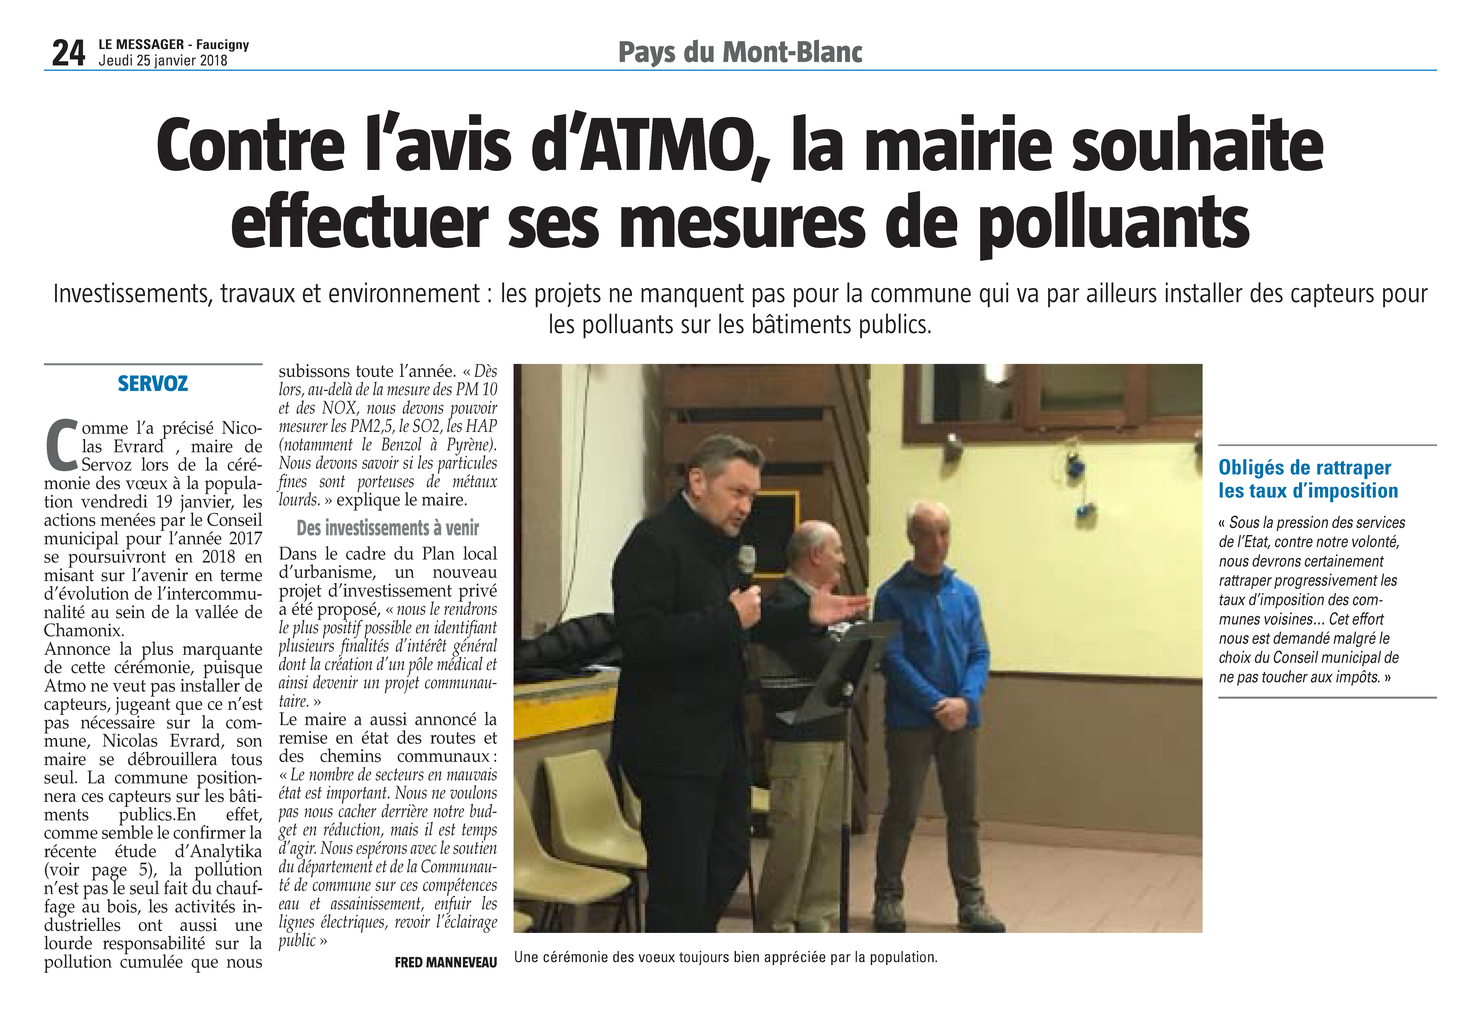 25.01.2018 > LE MESSAGER : "Contre l’avis d’ATMO, la mairie de Servoz souhaite effectuer ses mesures de polluants"